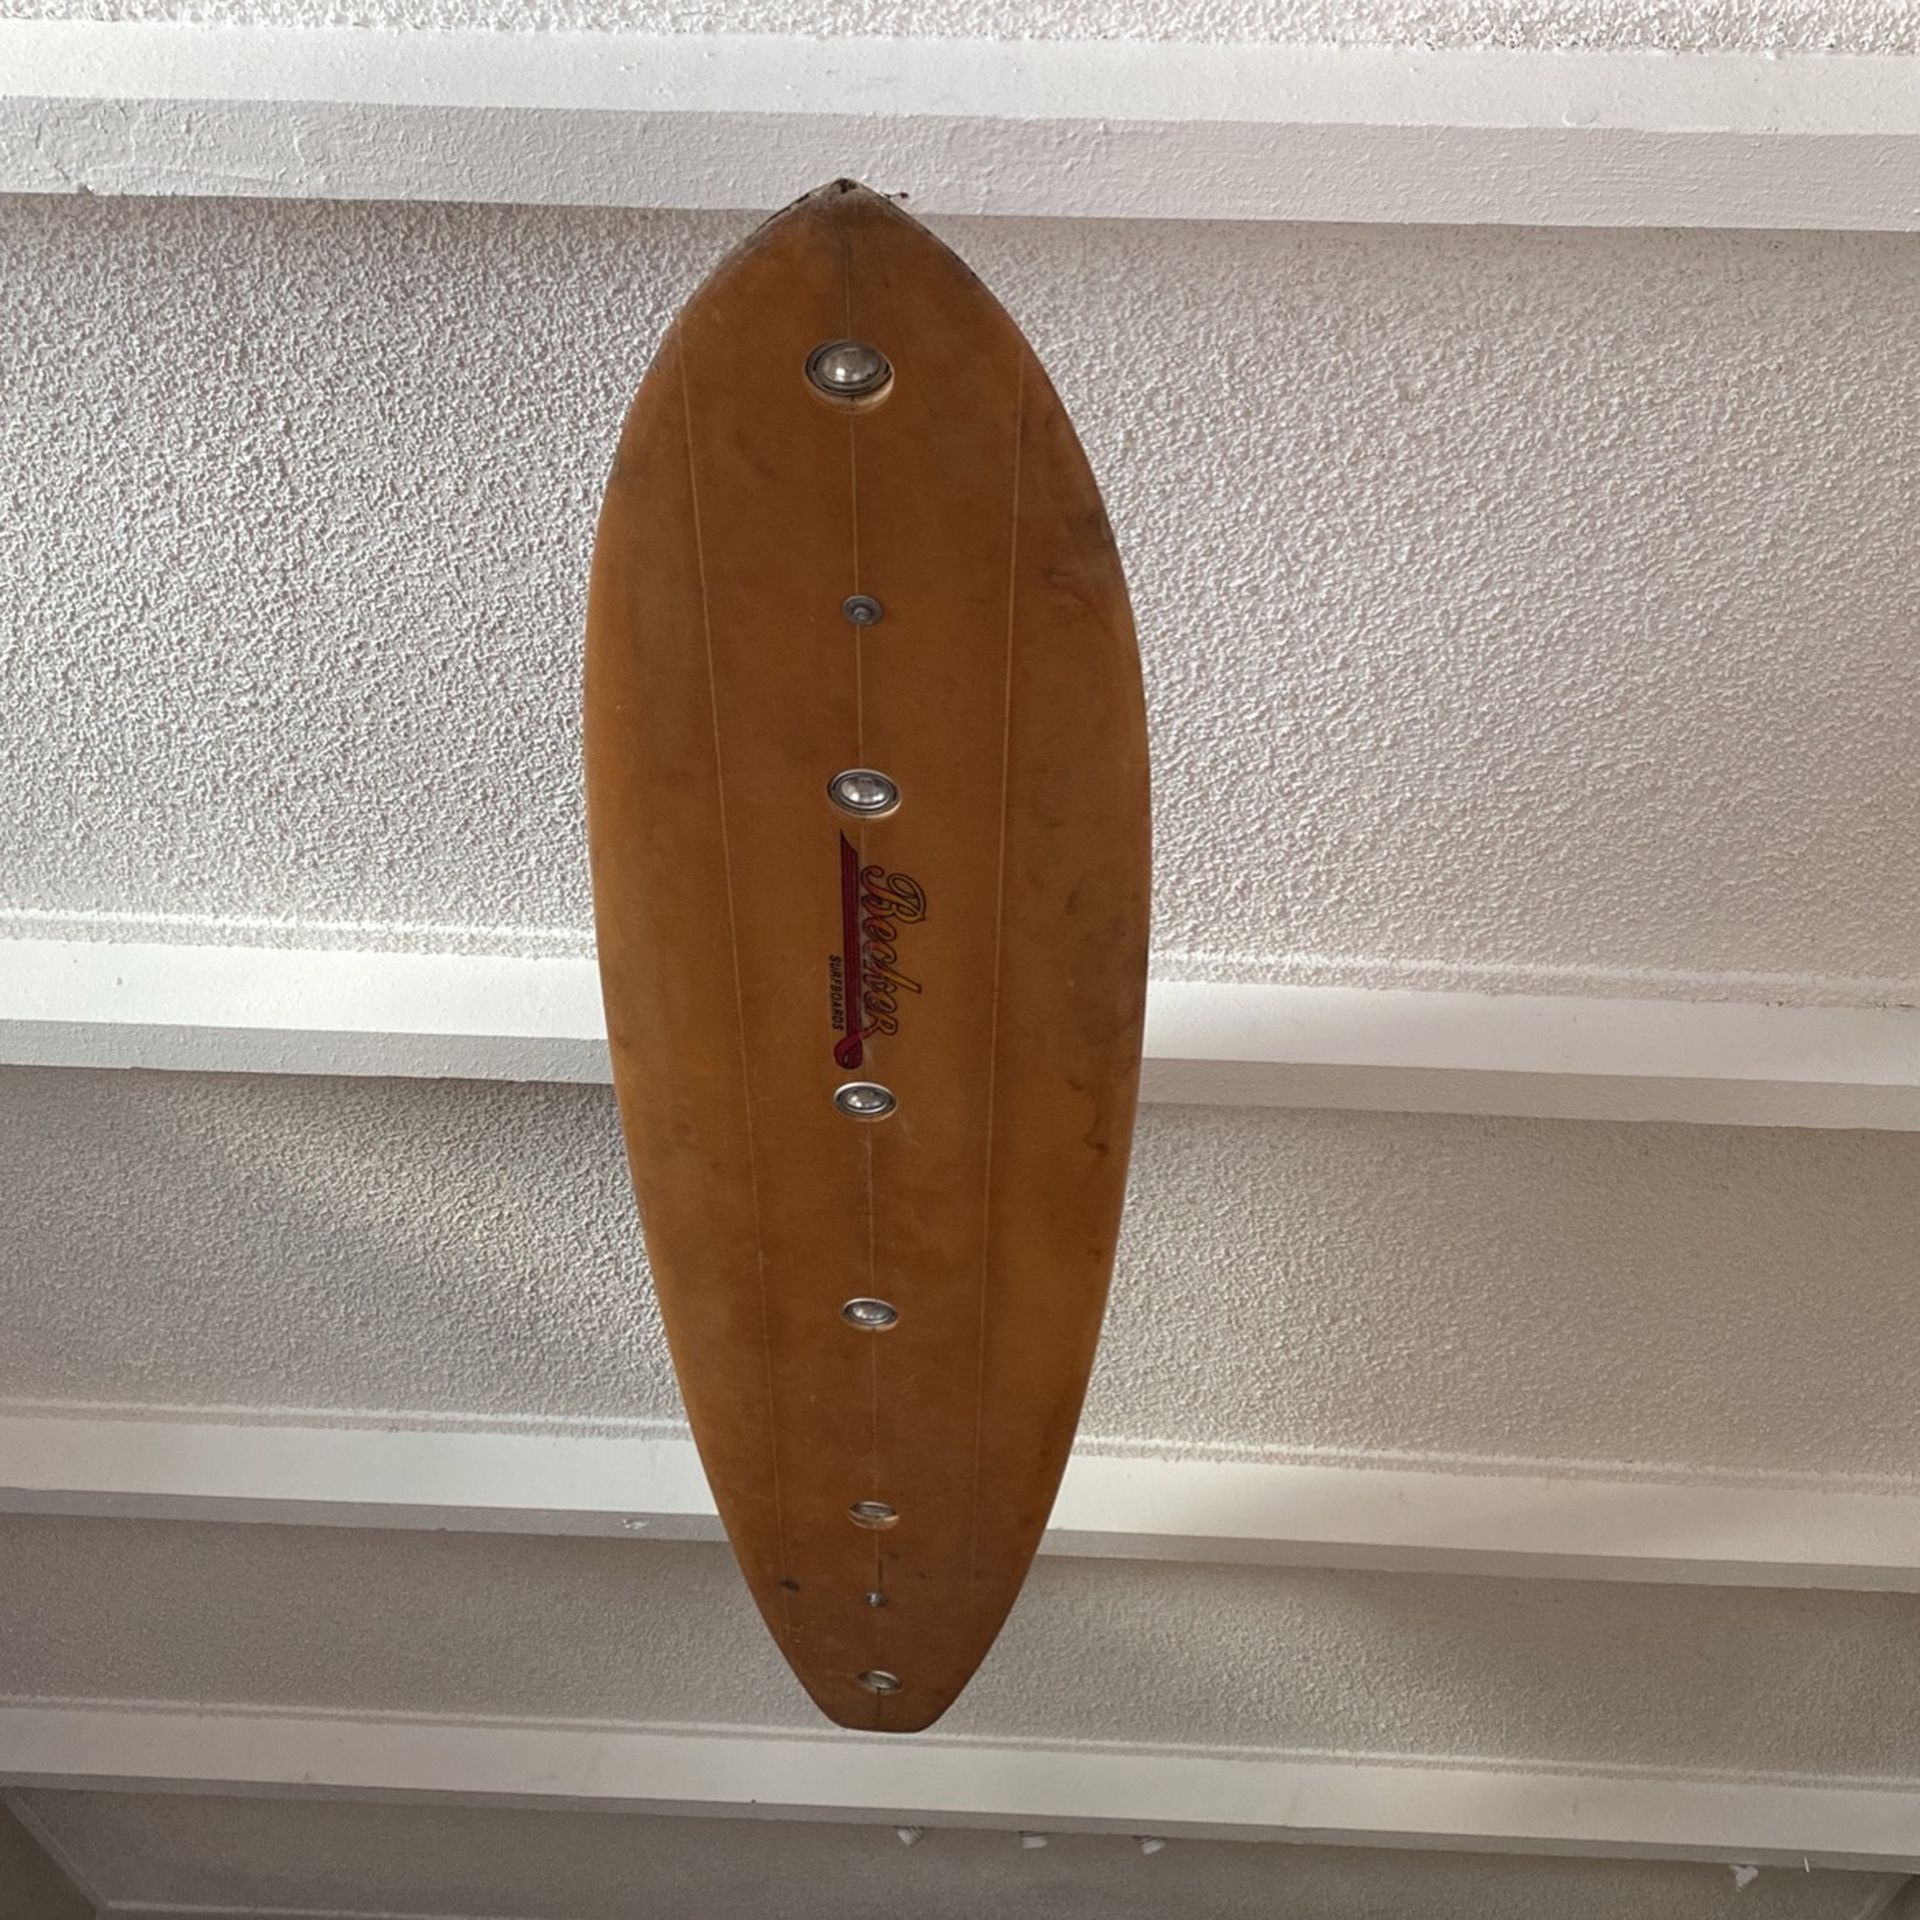 Surfboard light fixture